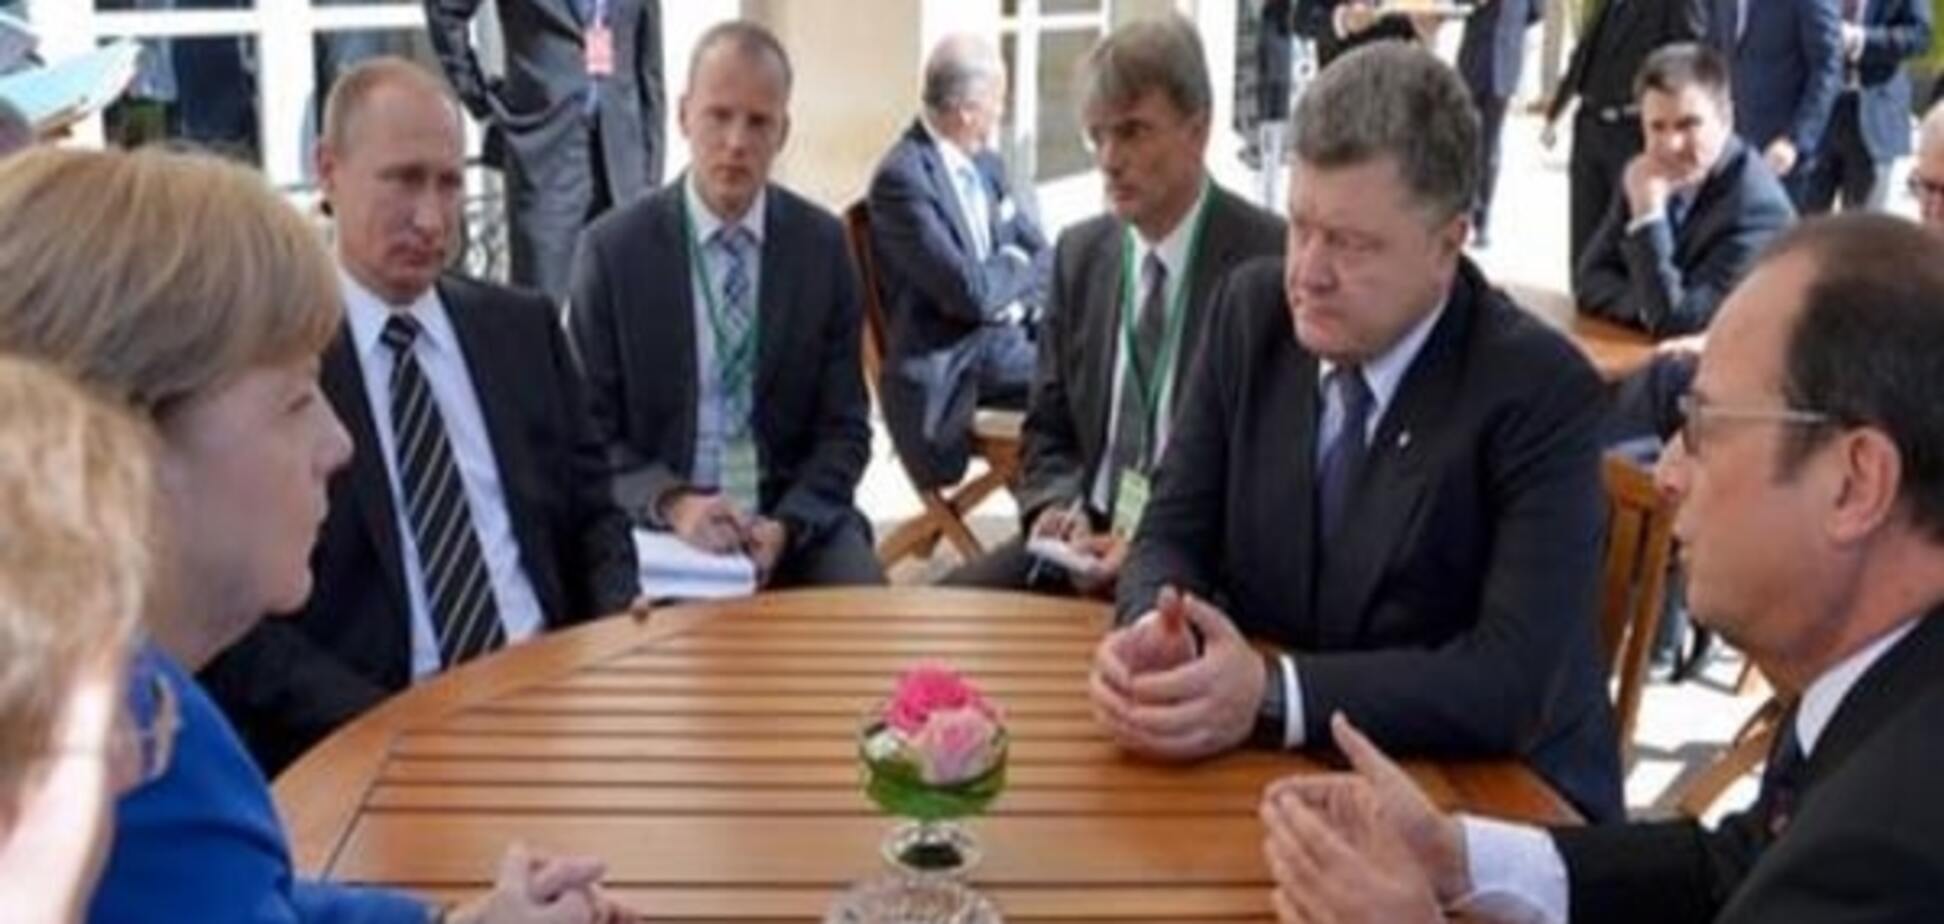 Комментарий: На 'нормандском' саммите Путин выиграл по очкам